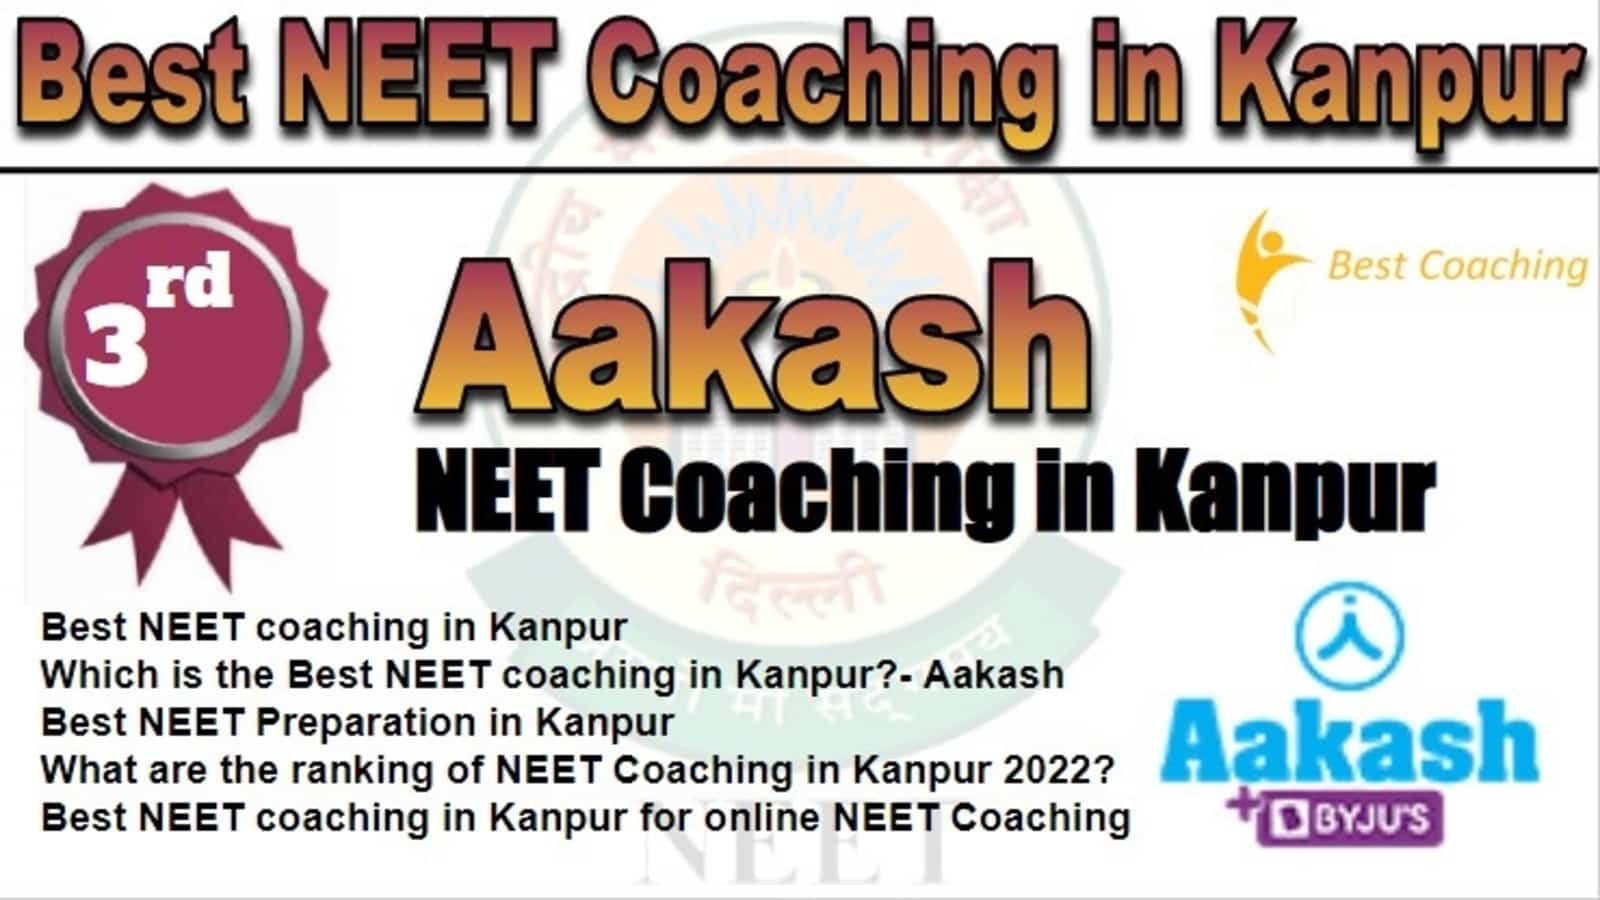 Rank 3 Best NEET Coaching In Kanpur